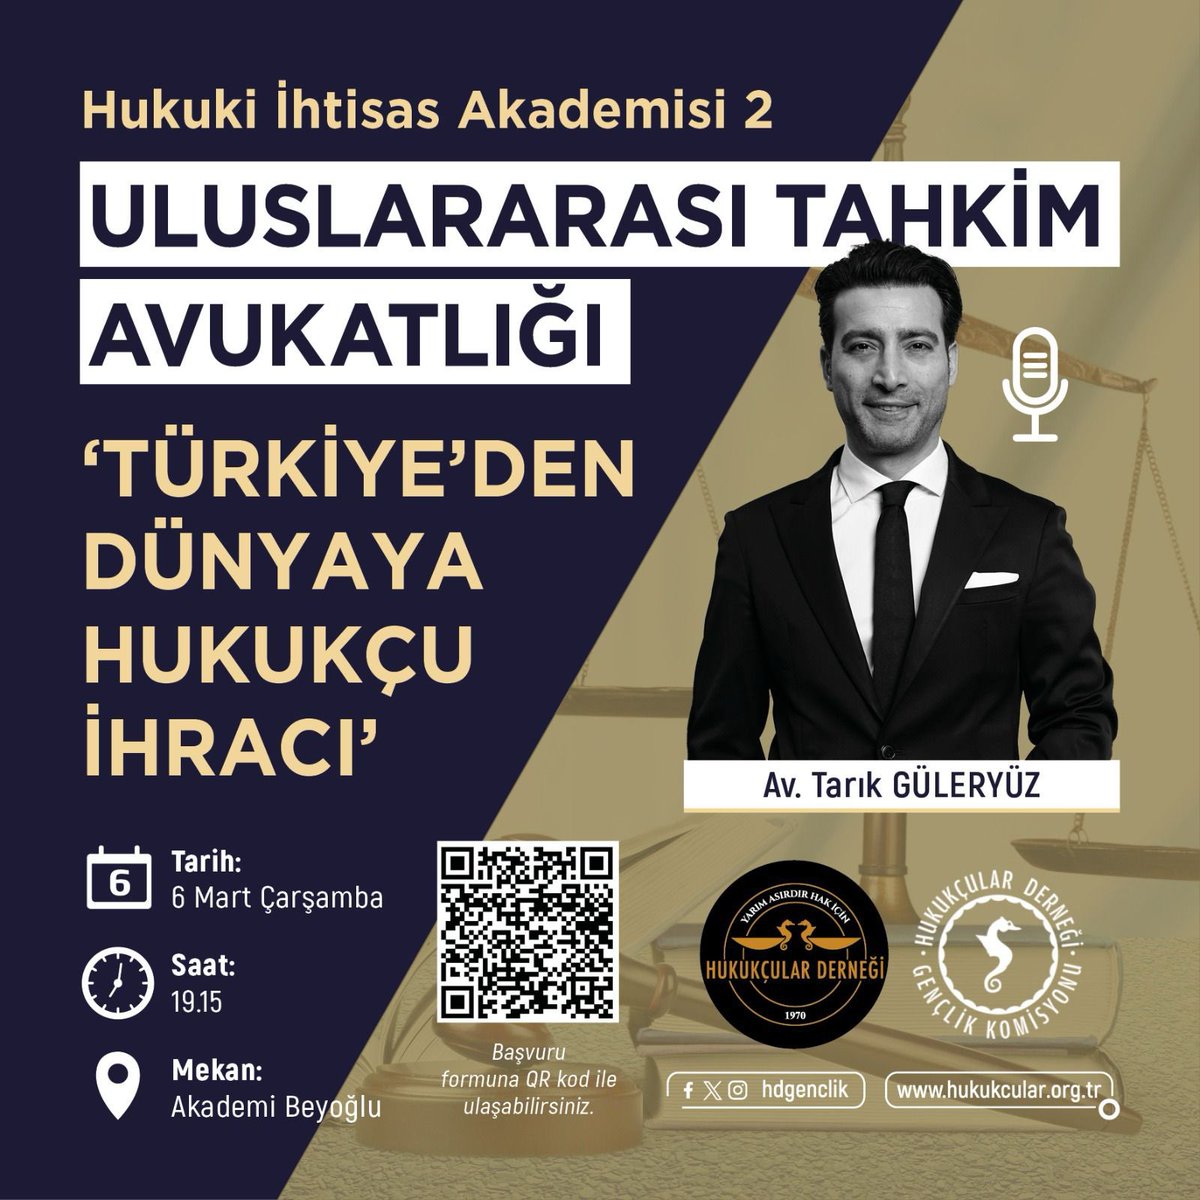 HDGK olarak Hukuk İhtisas Akademisi Eğitimleri serimizin Uluslararası Tahkim Avukatlığı programı çerçevesinde Güleryüz Partners’ın Kurucu Ortağı, değerli Av. Tarık GÜLERYÜZ’ü 6 Mart Çarşamba günü 19.15’te Akademi Beyoğlu’nda ağırlayacağız. +